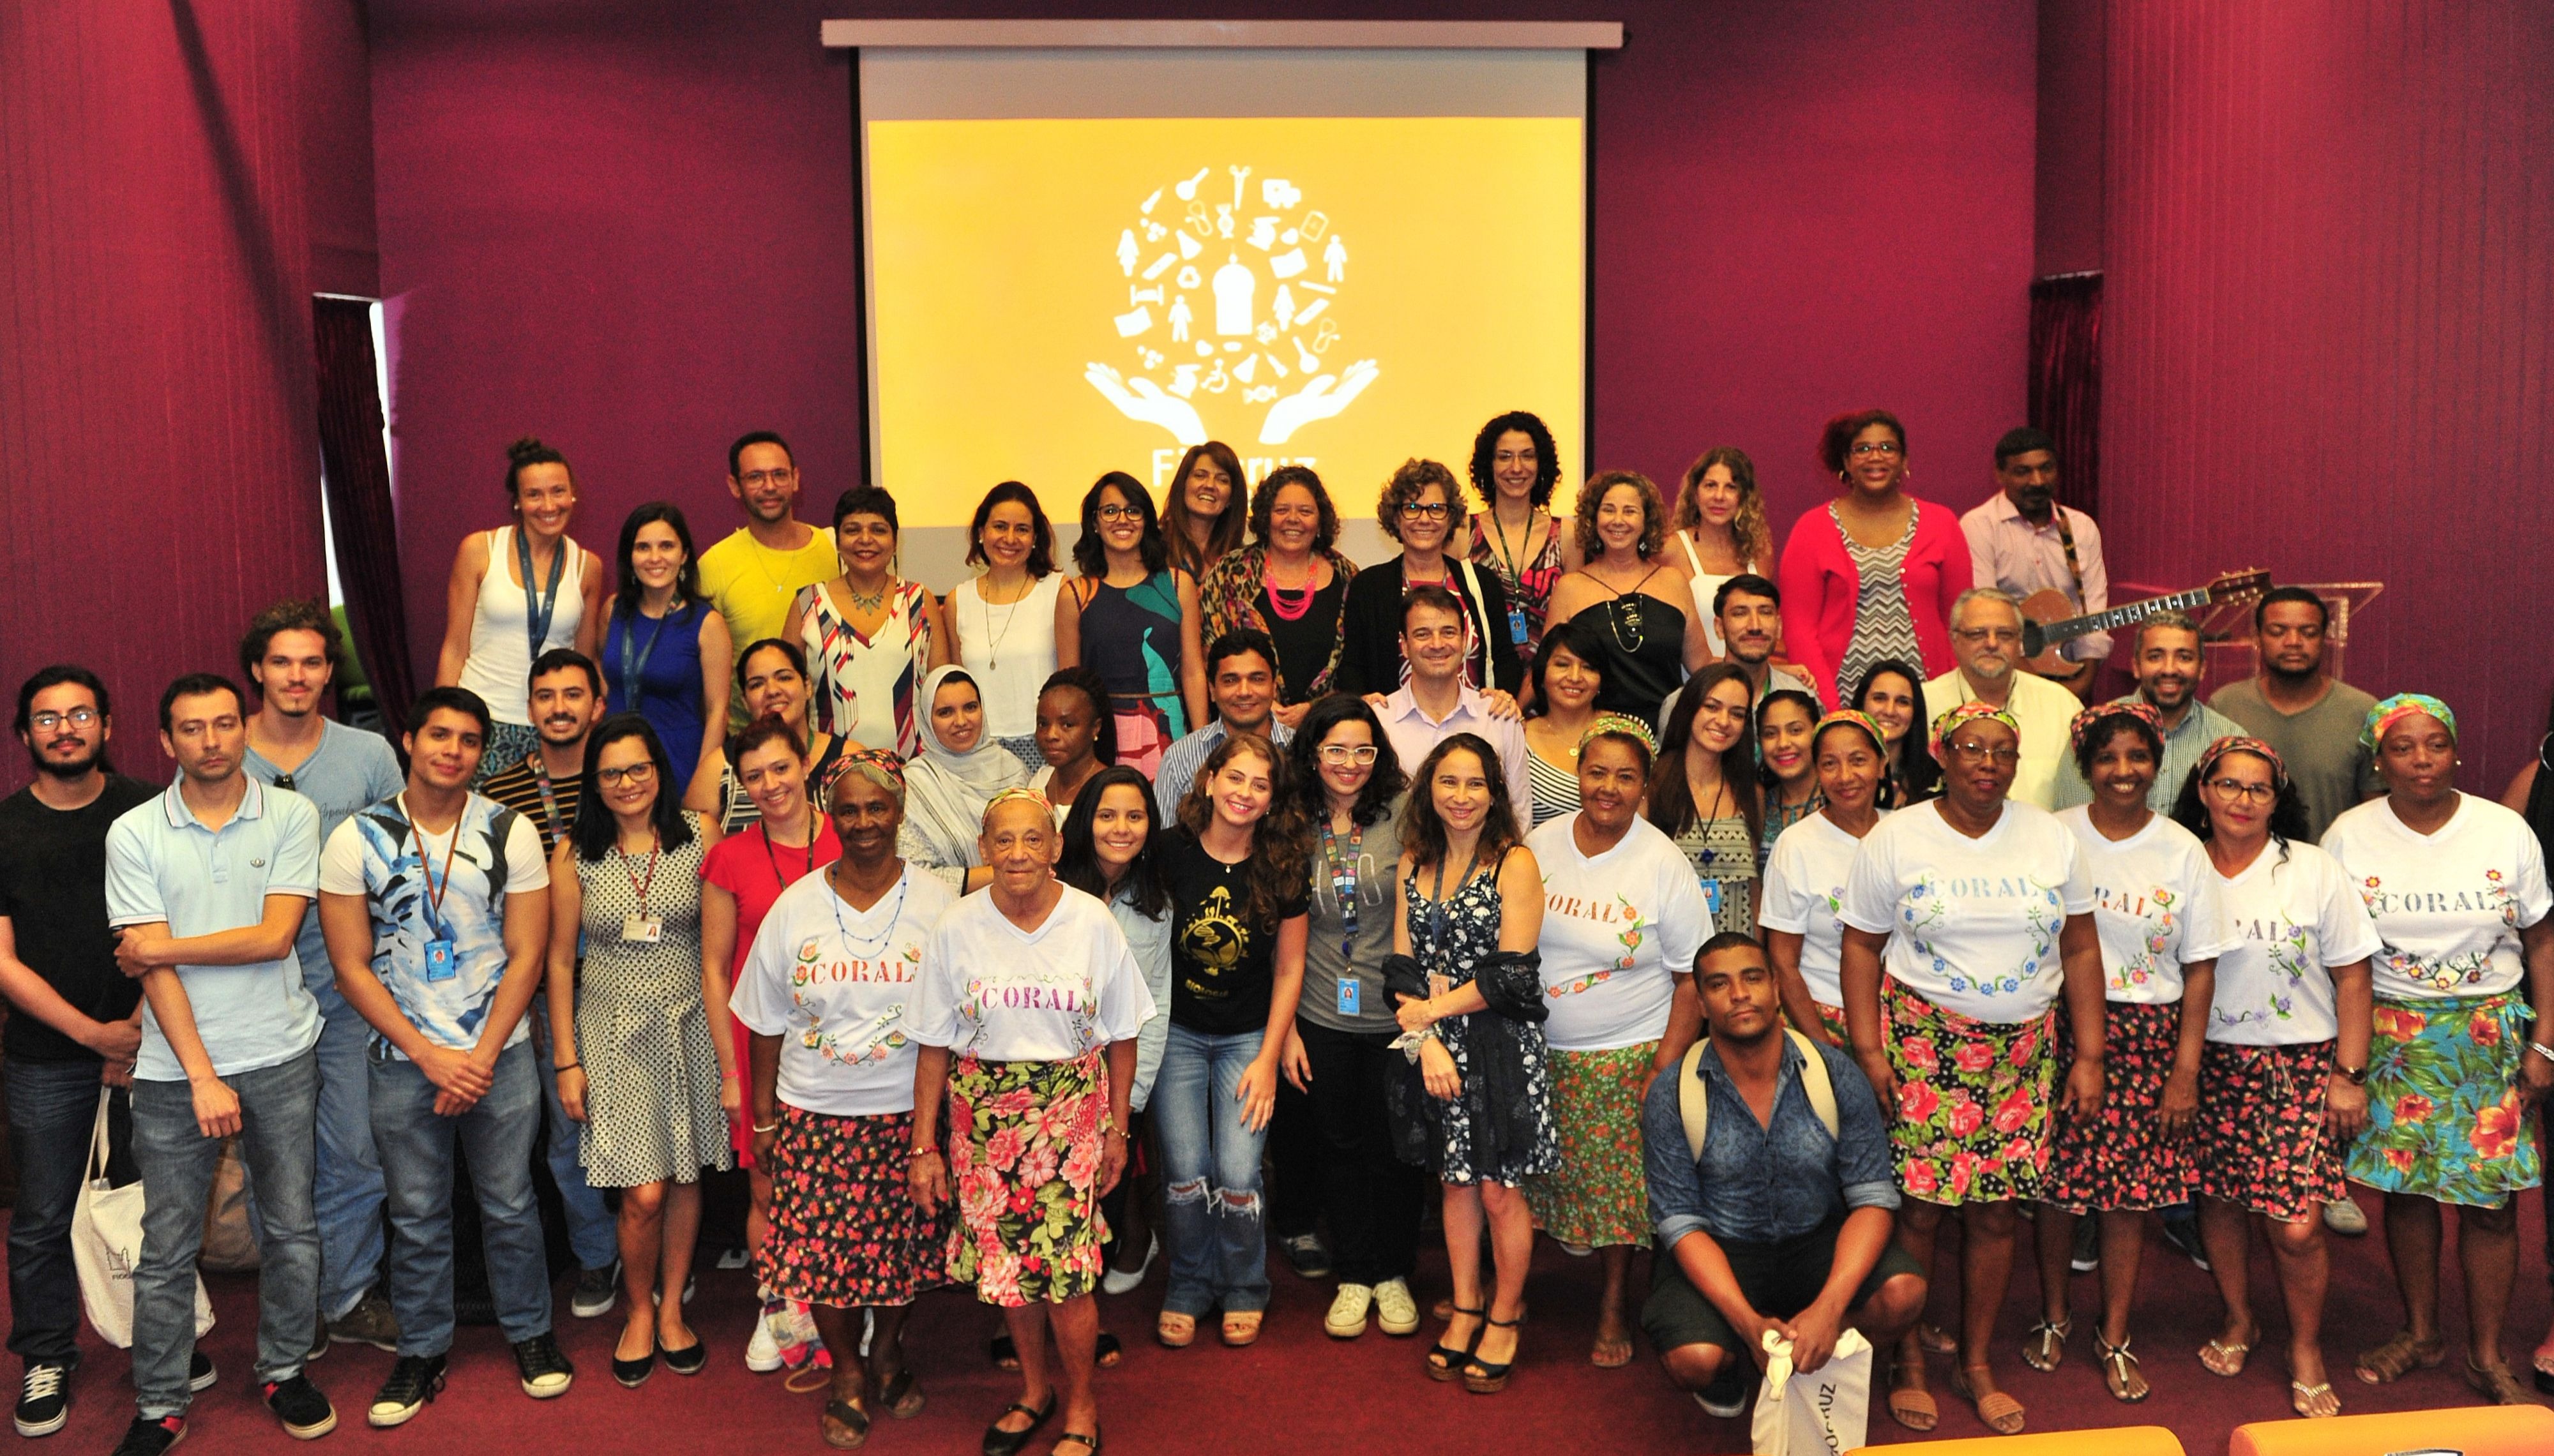 Fiocruz Acolhe reúne estudantes de diversas partes do Brasil e do mundo